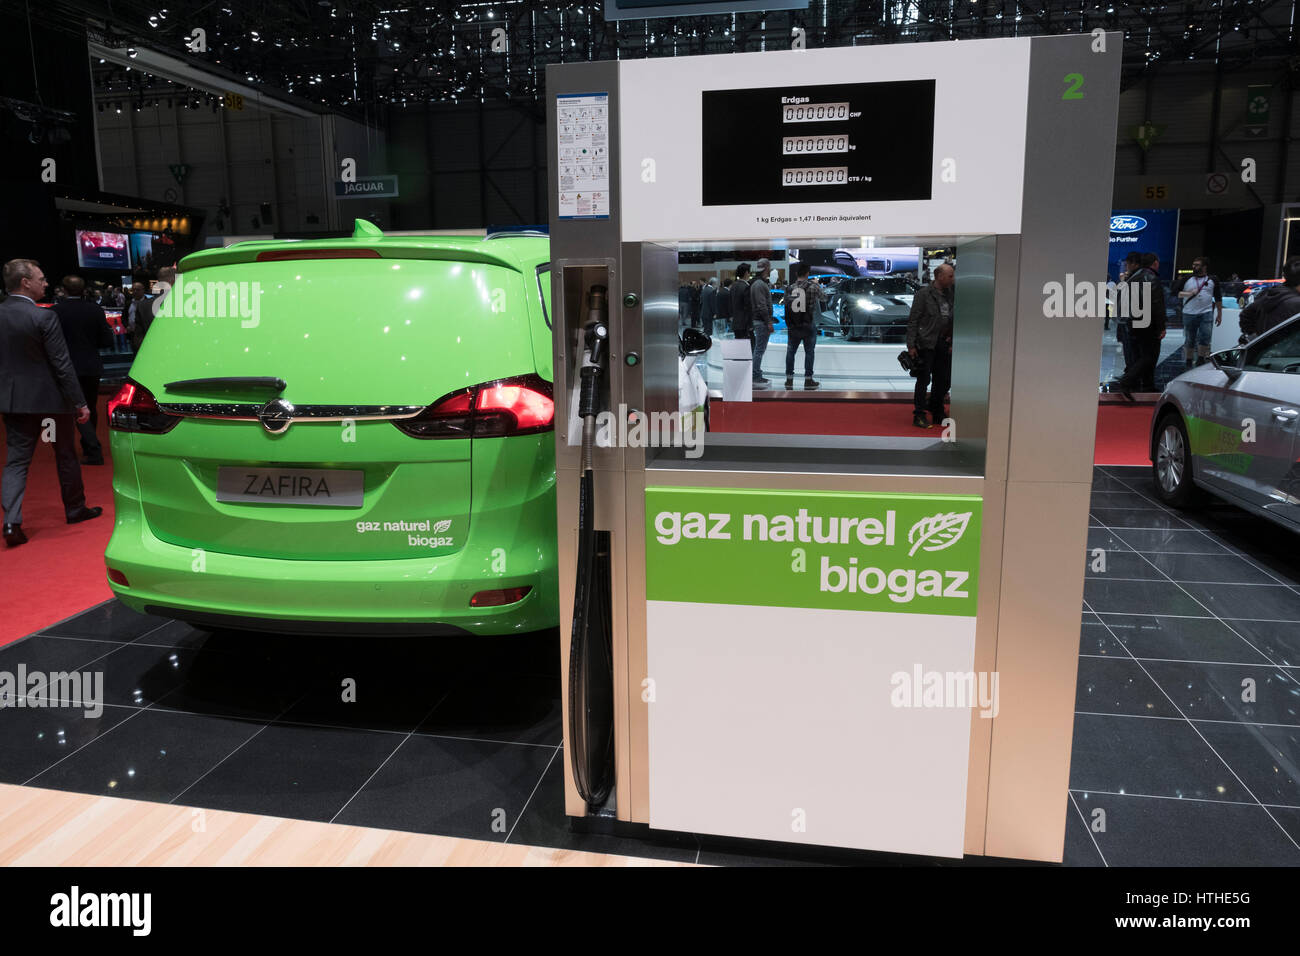 Affichage de la distribution de la pompe à gaz naturel par du biogaz Naturel Biogas Company au 87e Salon International de l'Automobile à Genève Suisse 2017 Banque D'Images